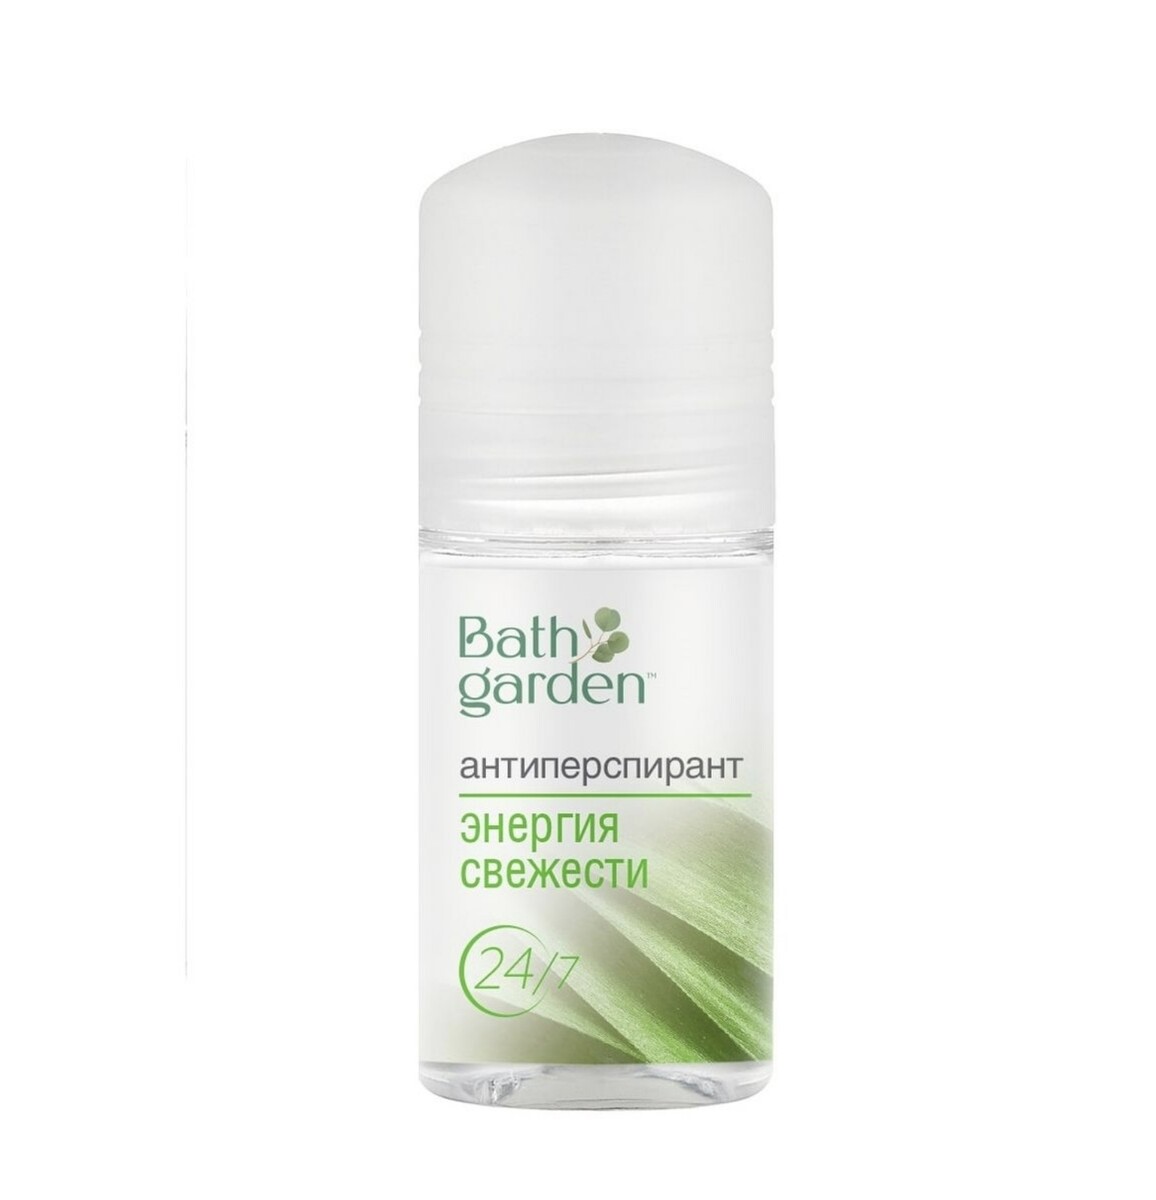 Bath garden дезодорант-антиперспирант энергия свежести, 50мл энергия творчества точка к